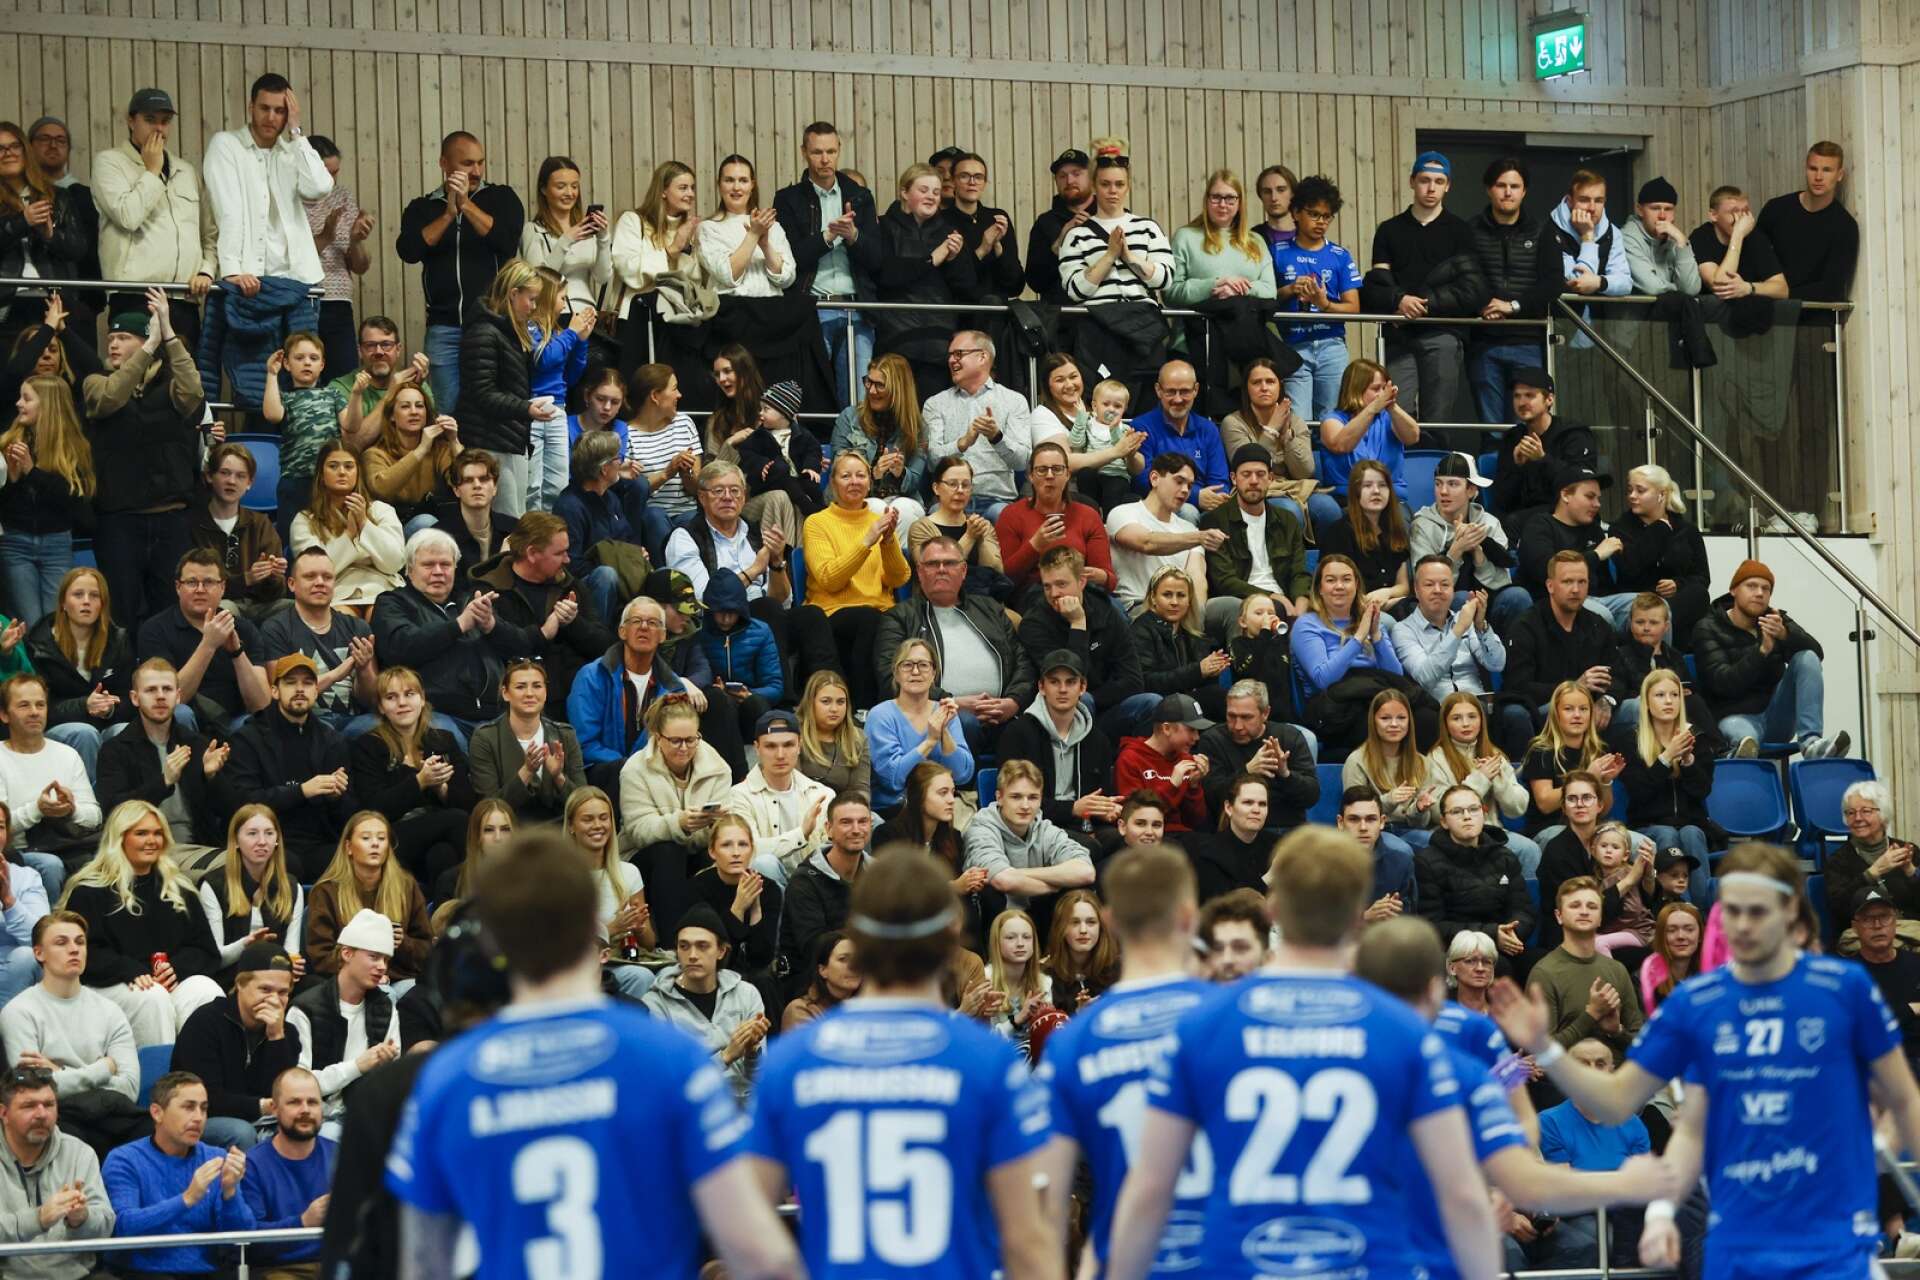 471 är nytt publikrekord för Nilsby i ECG Arena.